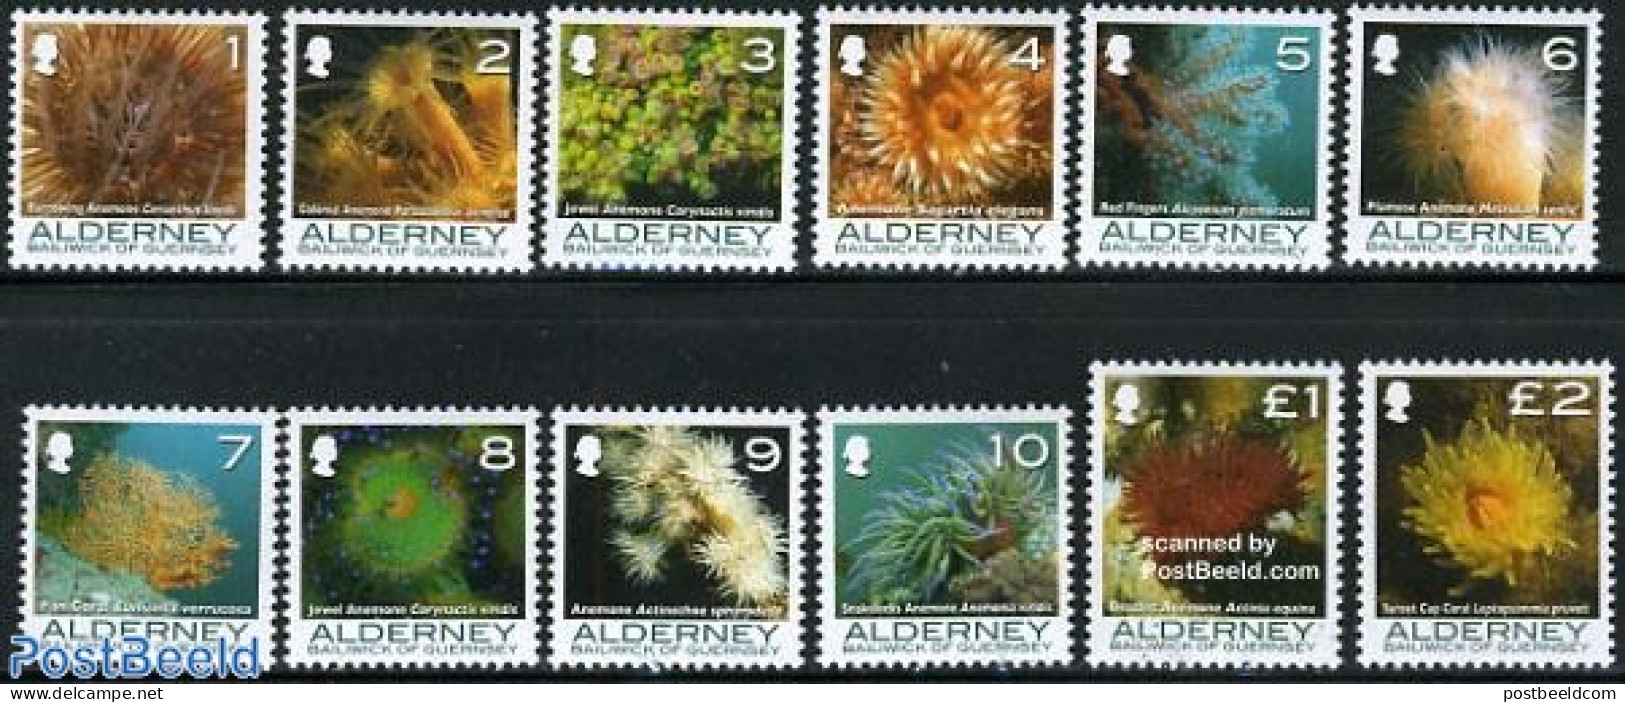 Alderney 2006 Definitives, Coral And Anemones 12v, Mint NH, Nature - Alderney